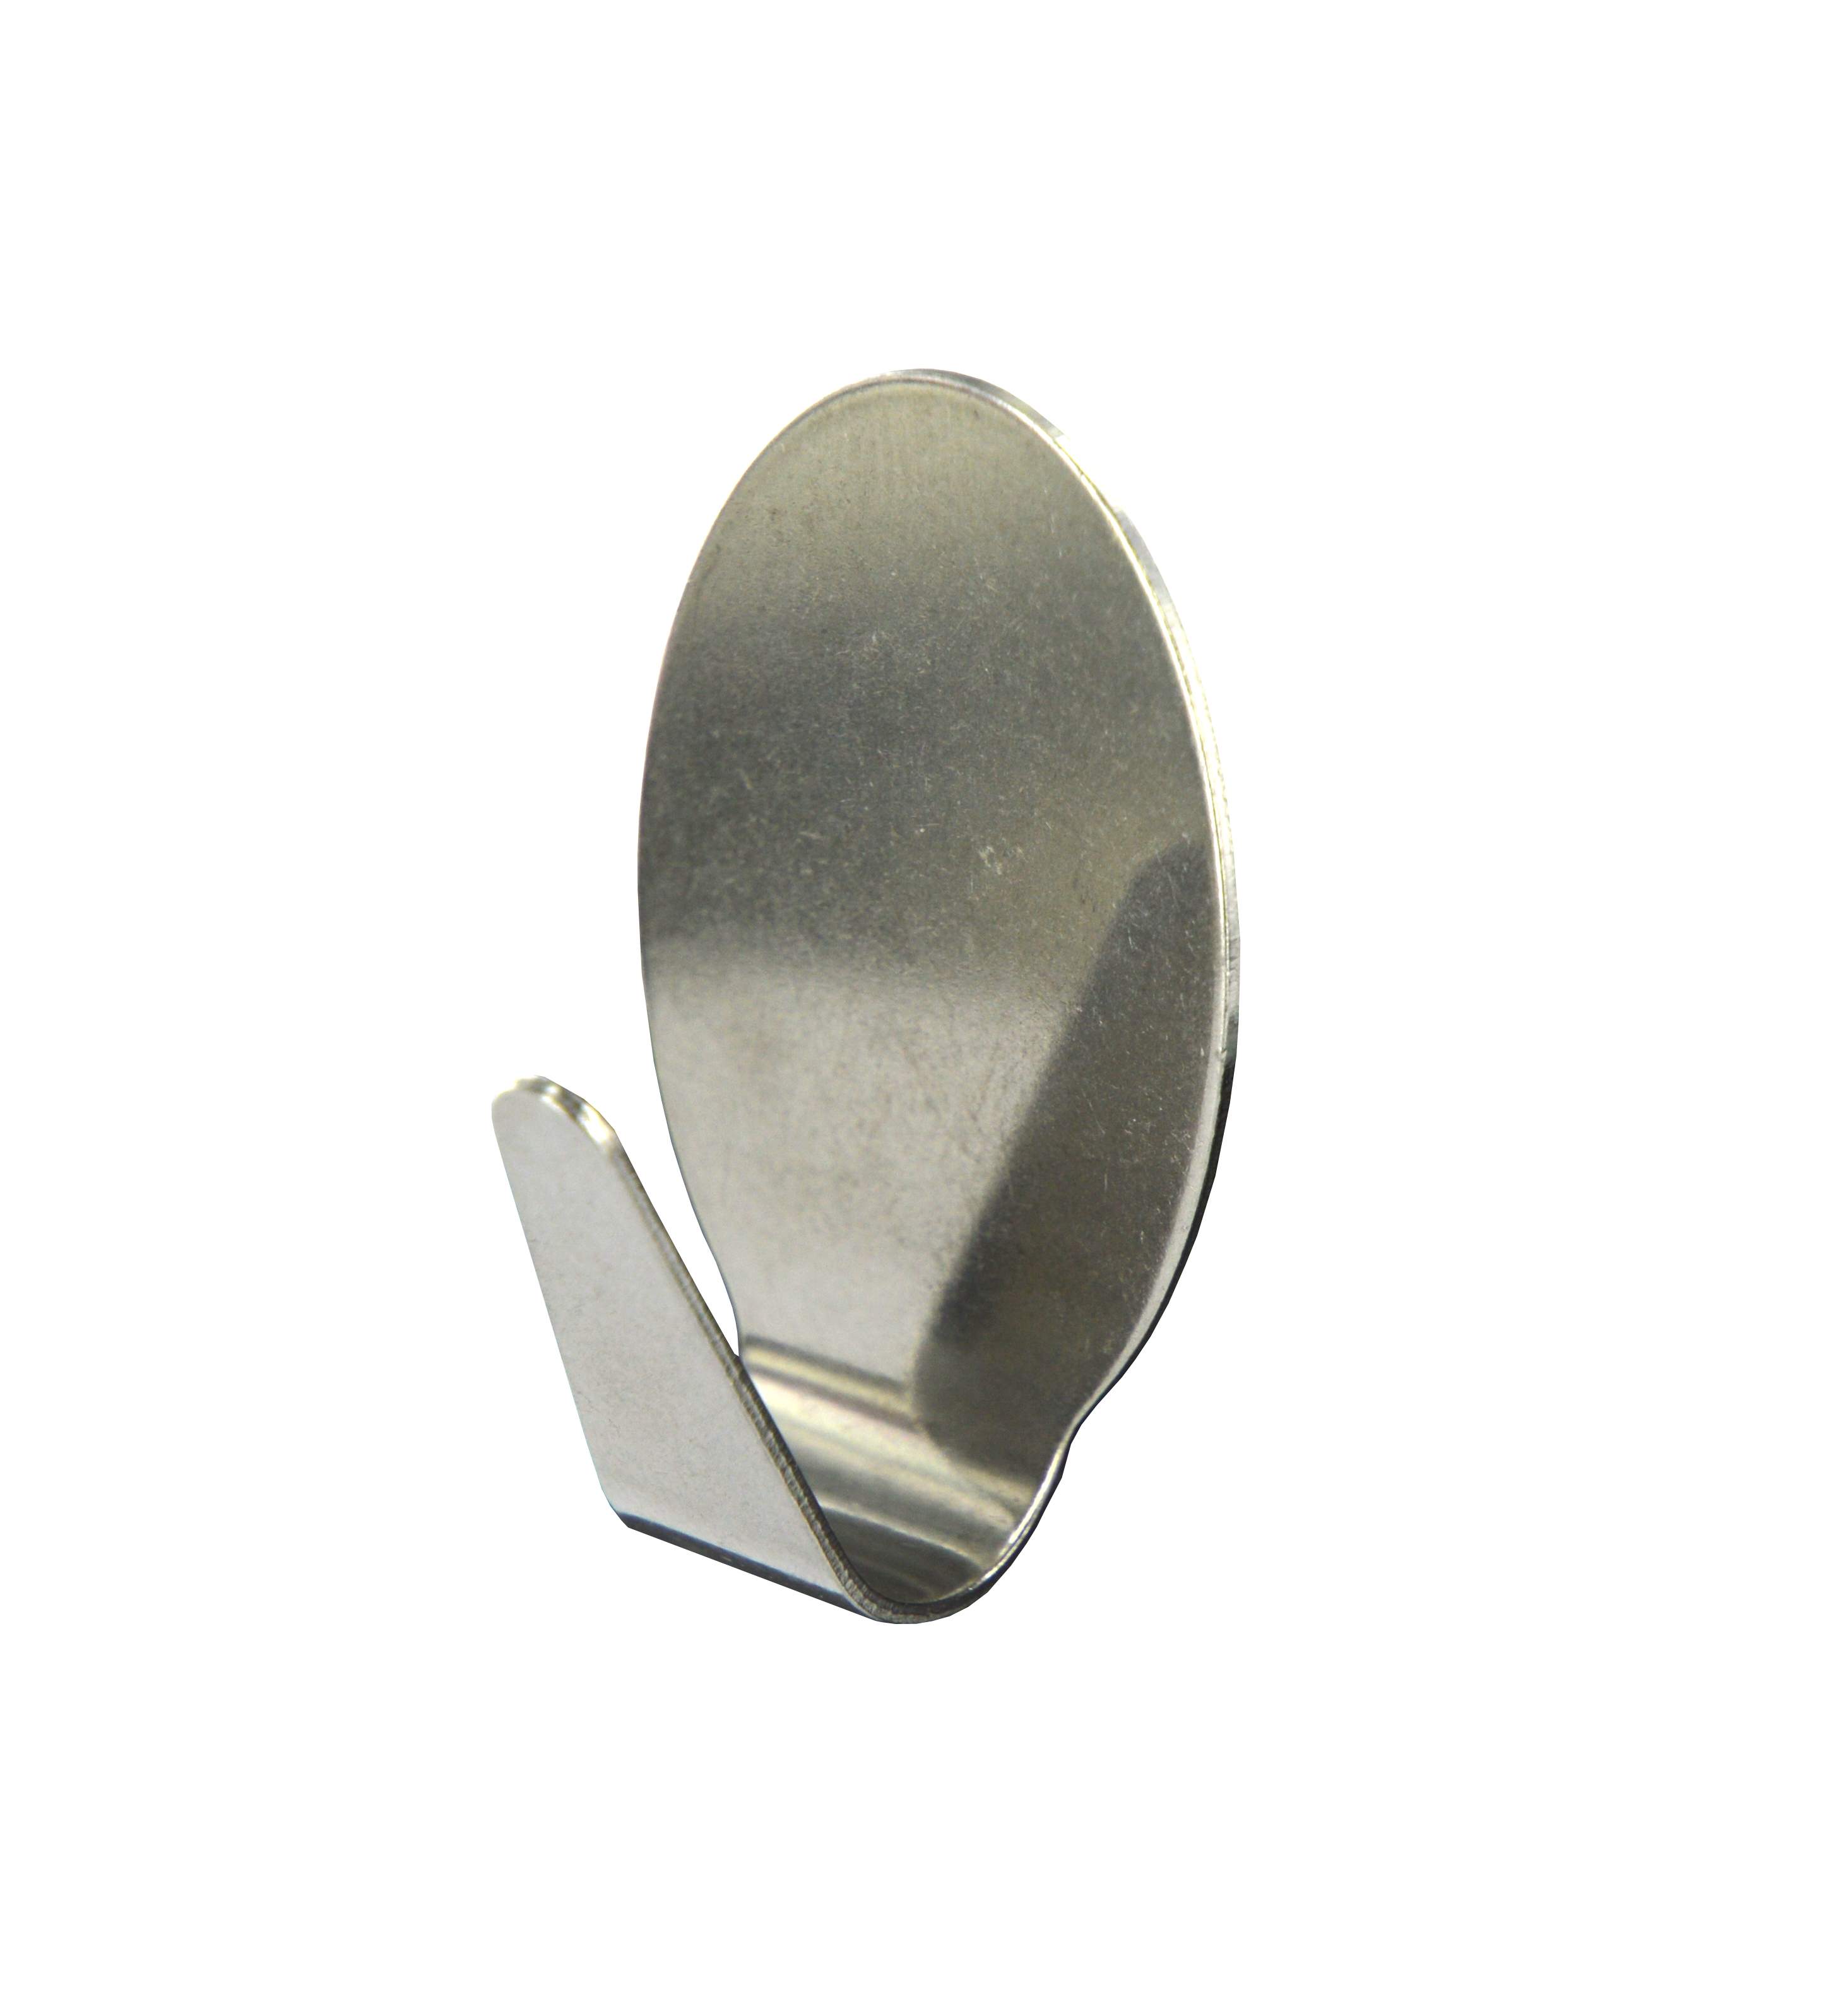 Gancio decorativo ovale adesivo, H.40 mm, L.27 mm, acciaio inox, 1 pezzo.